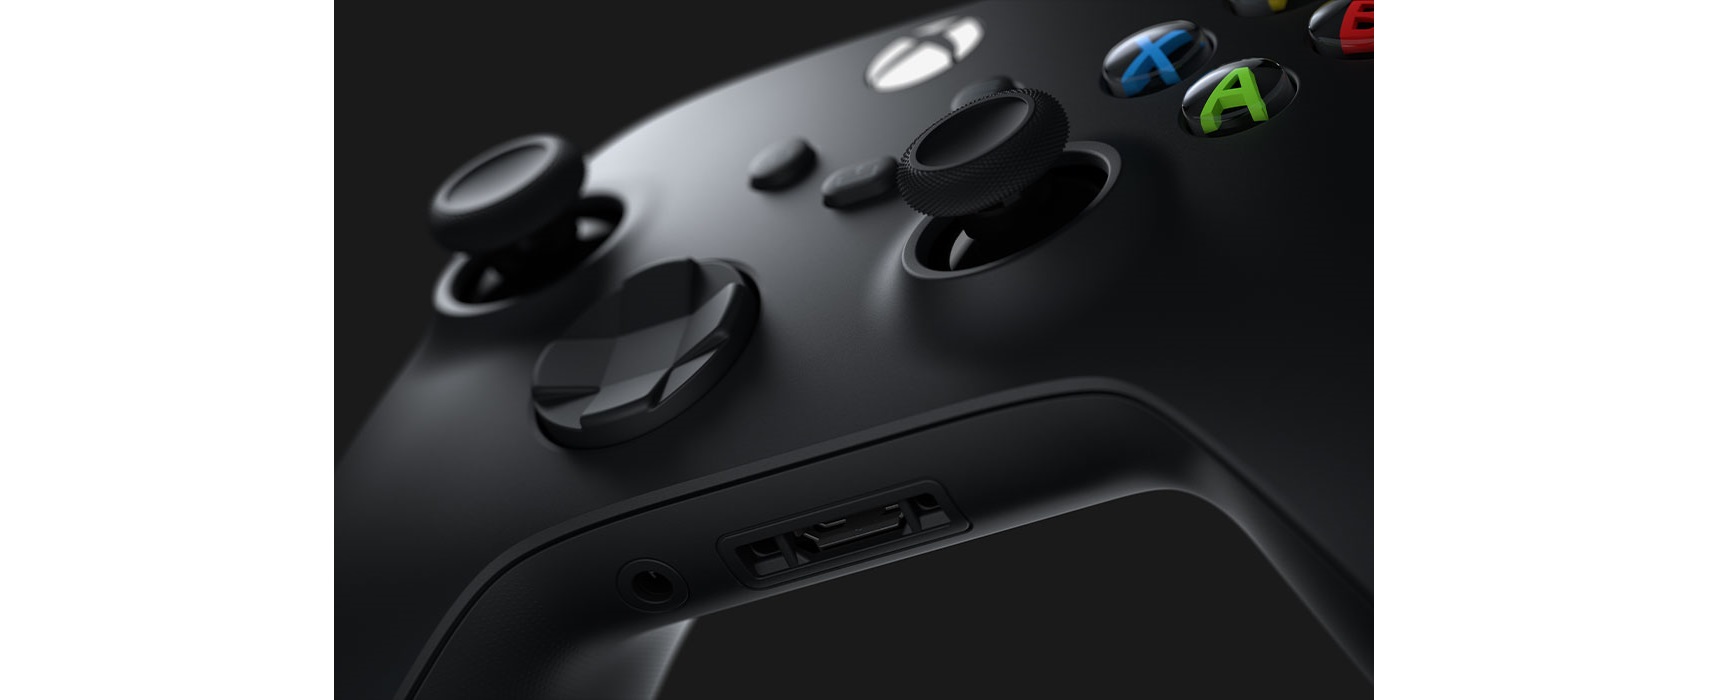 Tay cầm chơi game Xbox Series X Controller - Carbon Black tương thích với nhiều dạng thiết bị và có thể cắm tai nghe 3.5 trực tiếp trên tay cầm